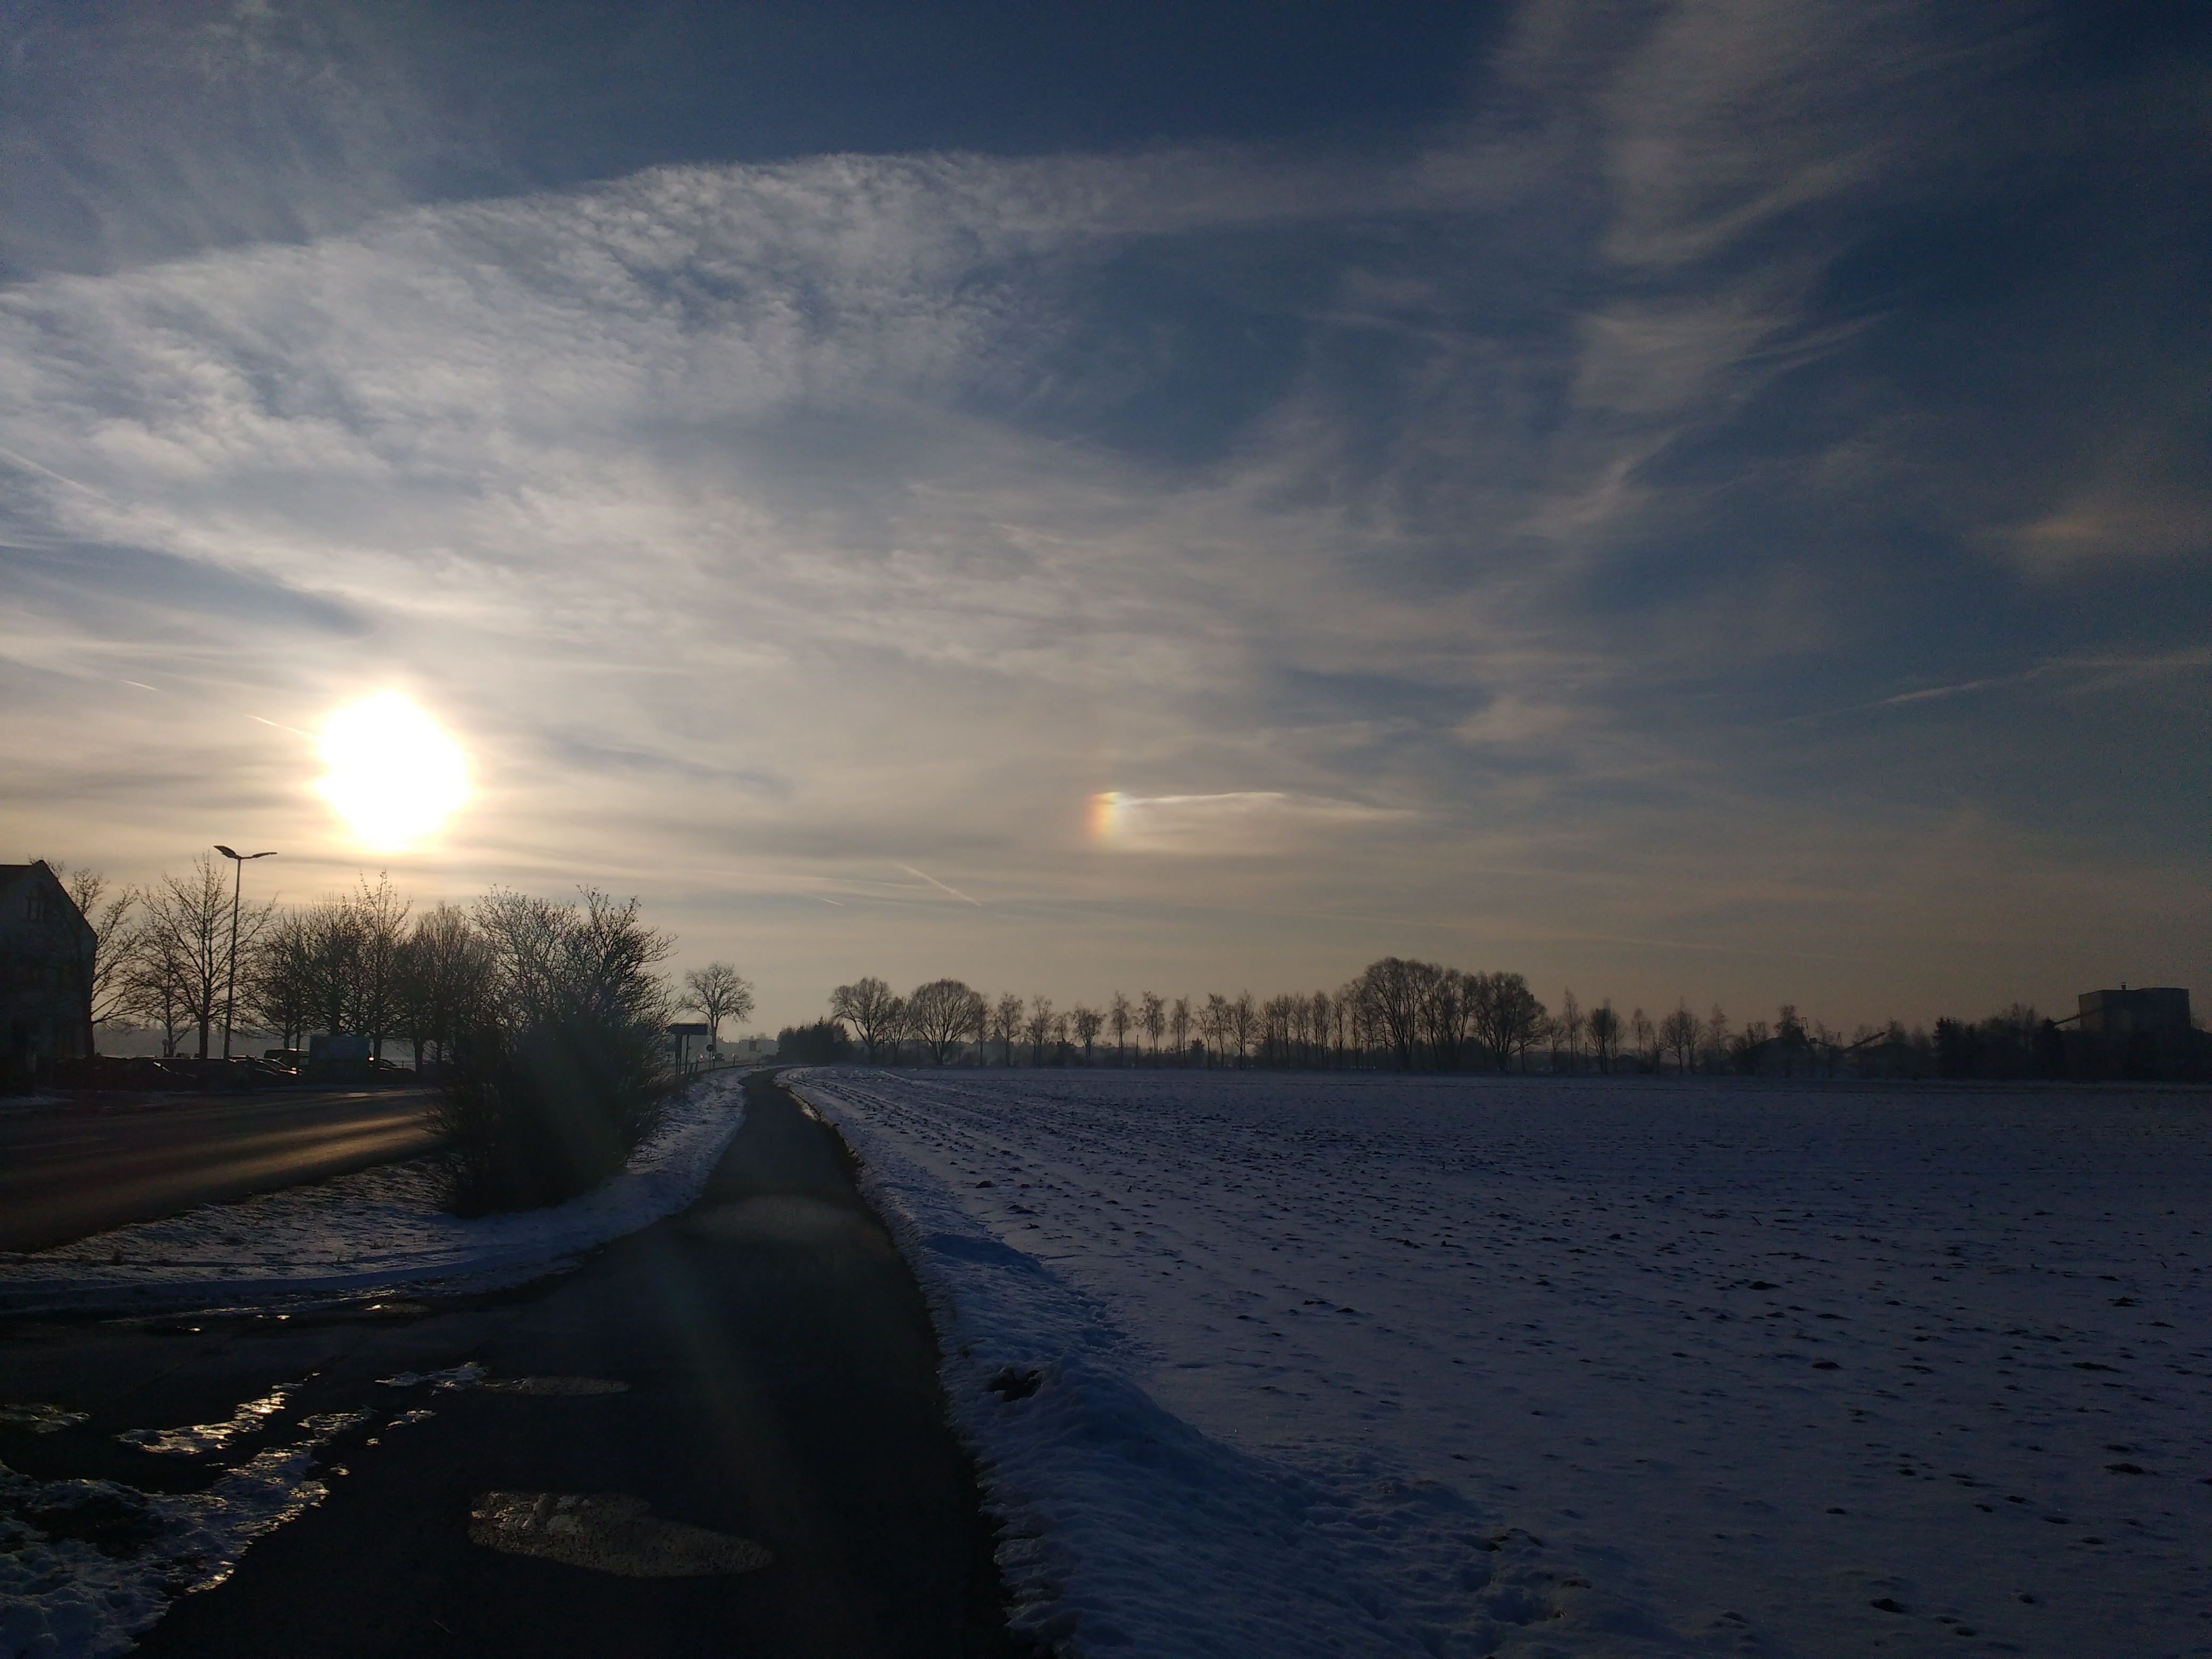 Winterlandschaft mit tiefstehender Sonne und einer kleinen Nebensonne rechts, sieht aus wie ein Regenbogen